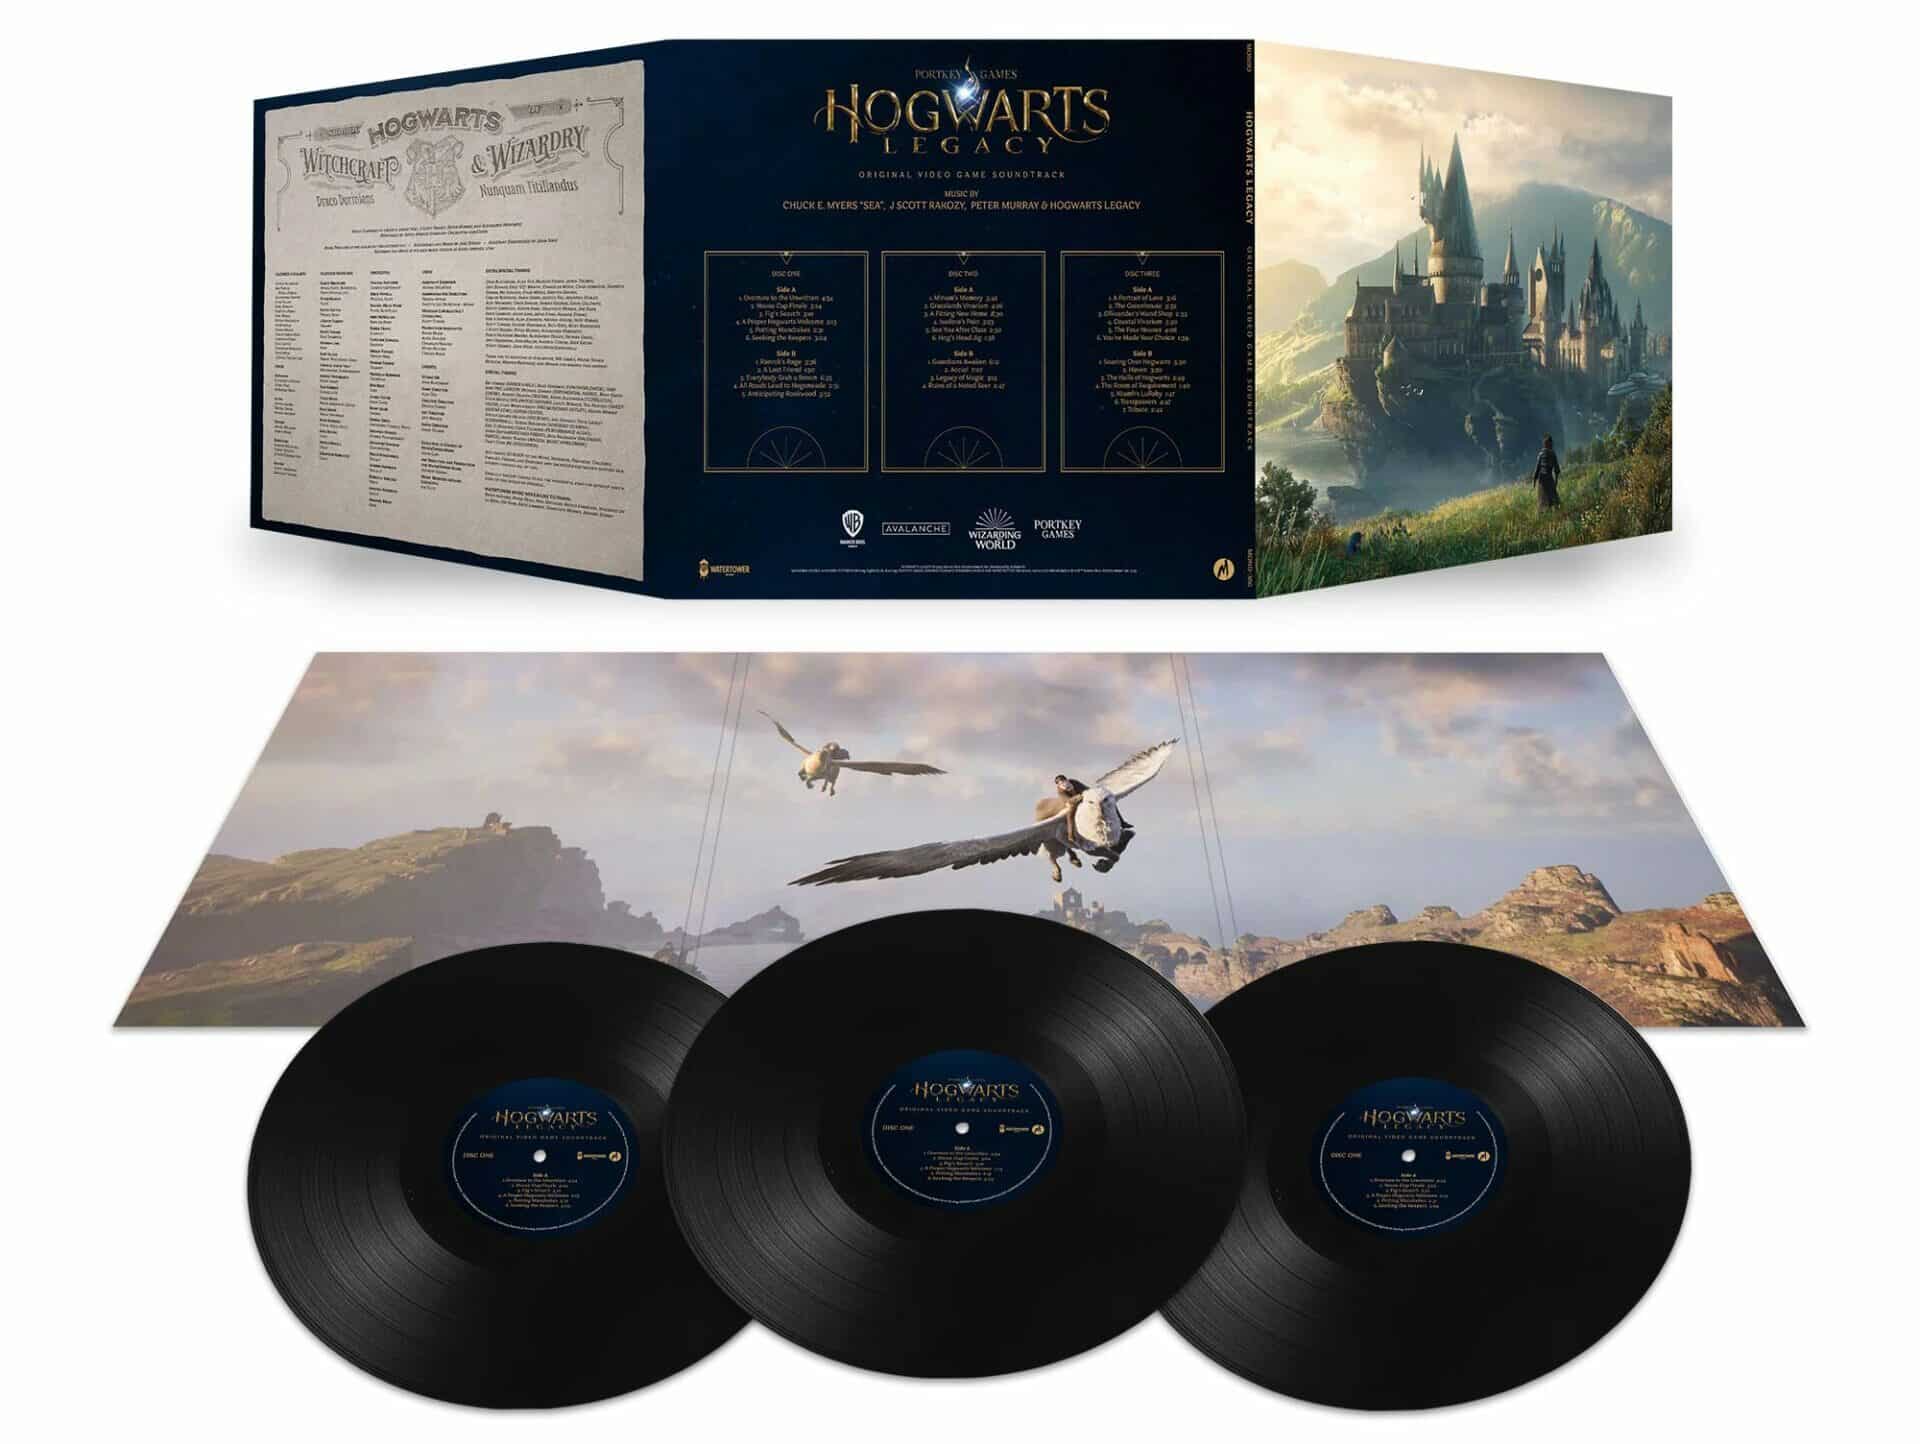 Hogwarts legacy vinyle 2